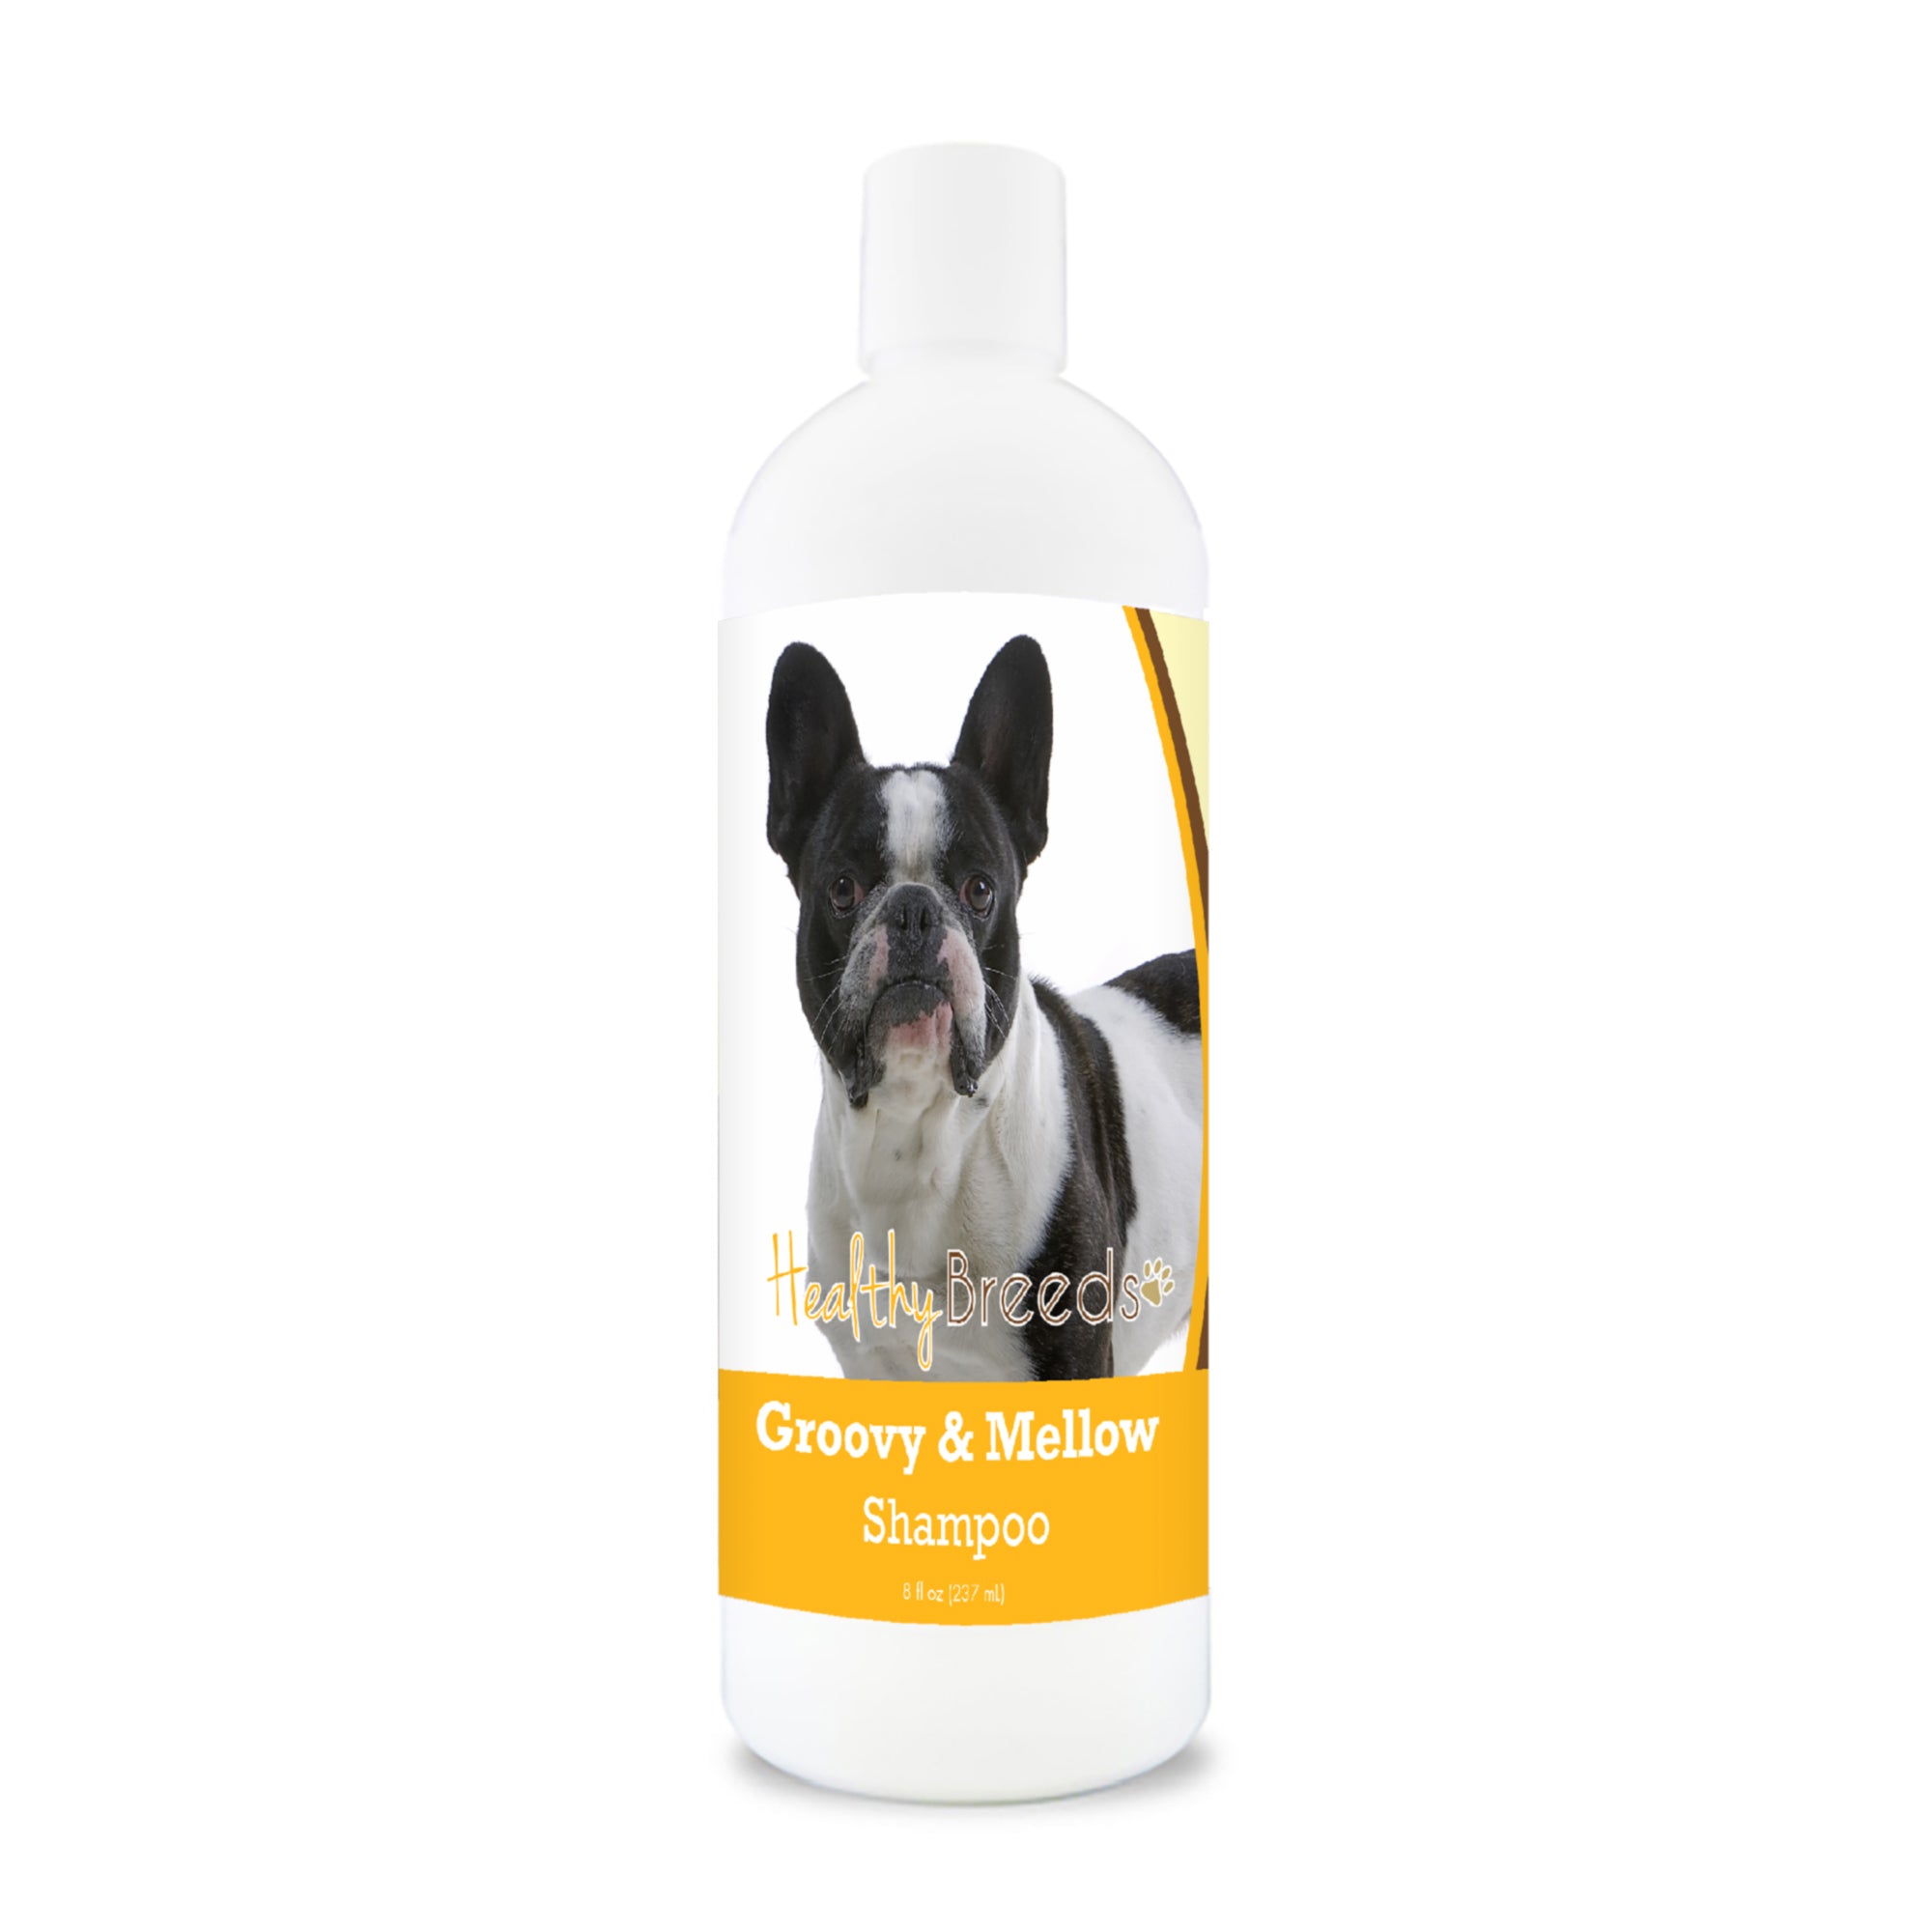 French Bulldog Groovy & Mellow Shampoo 8 oz